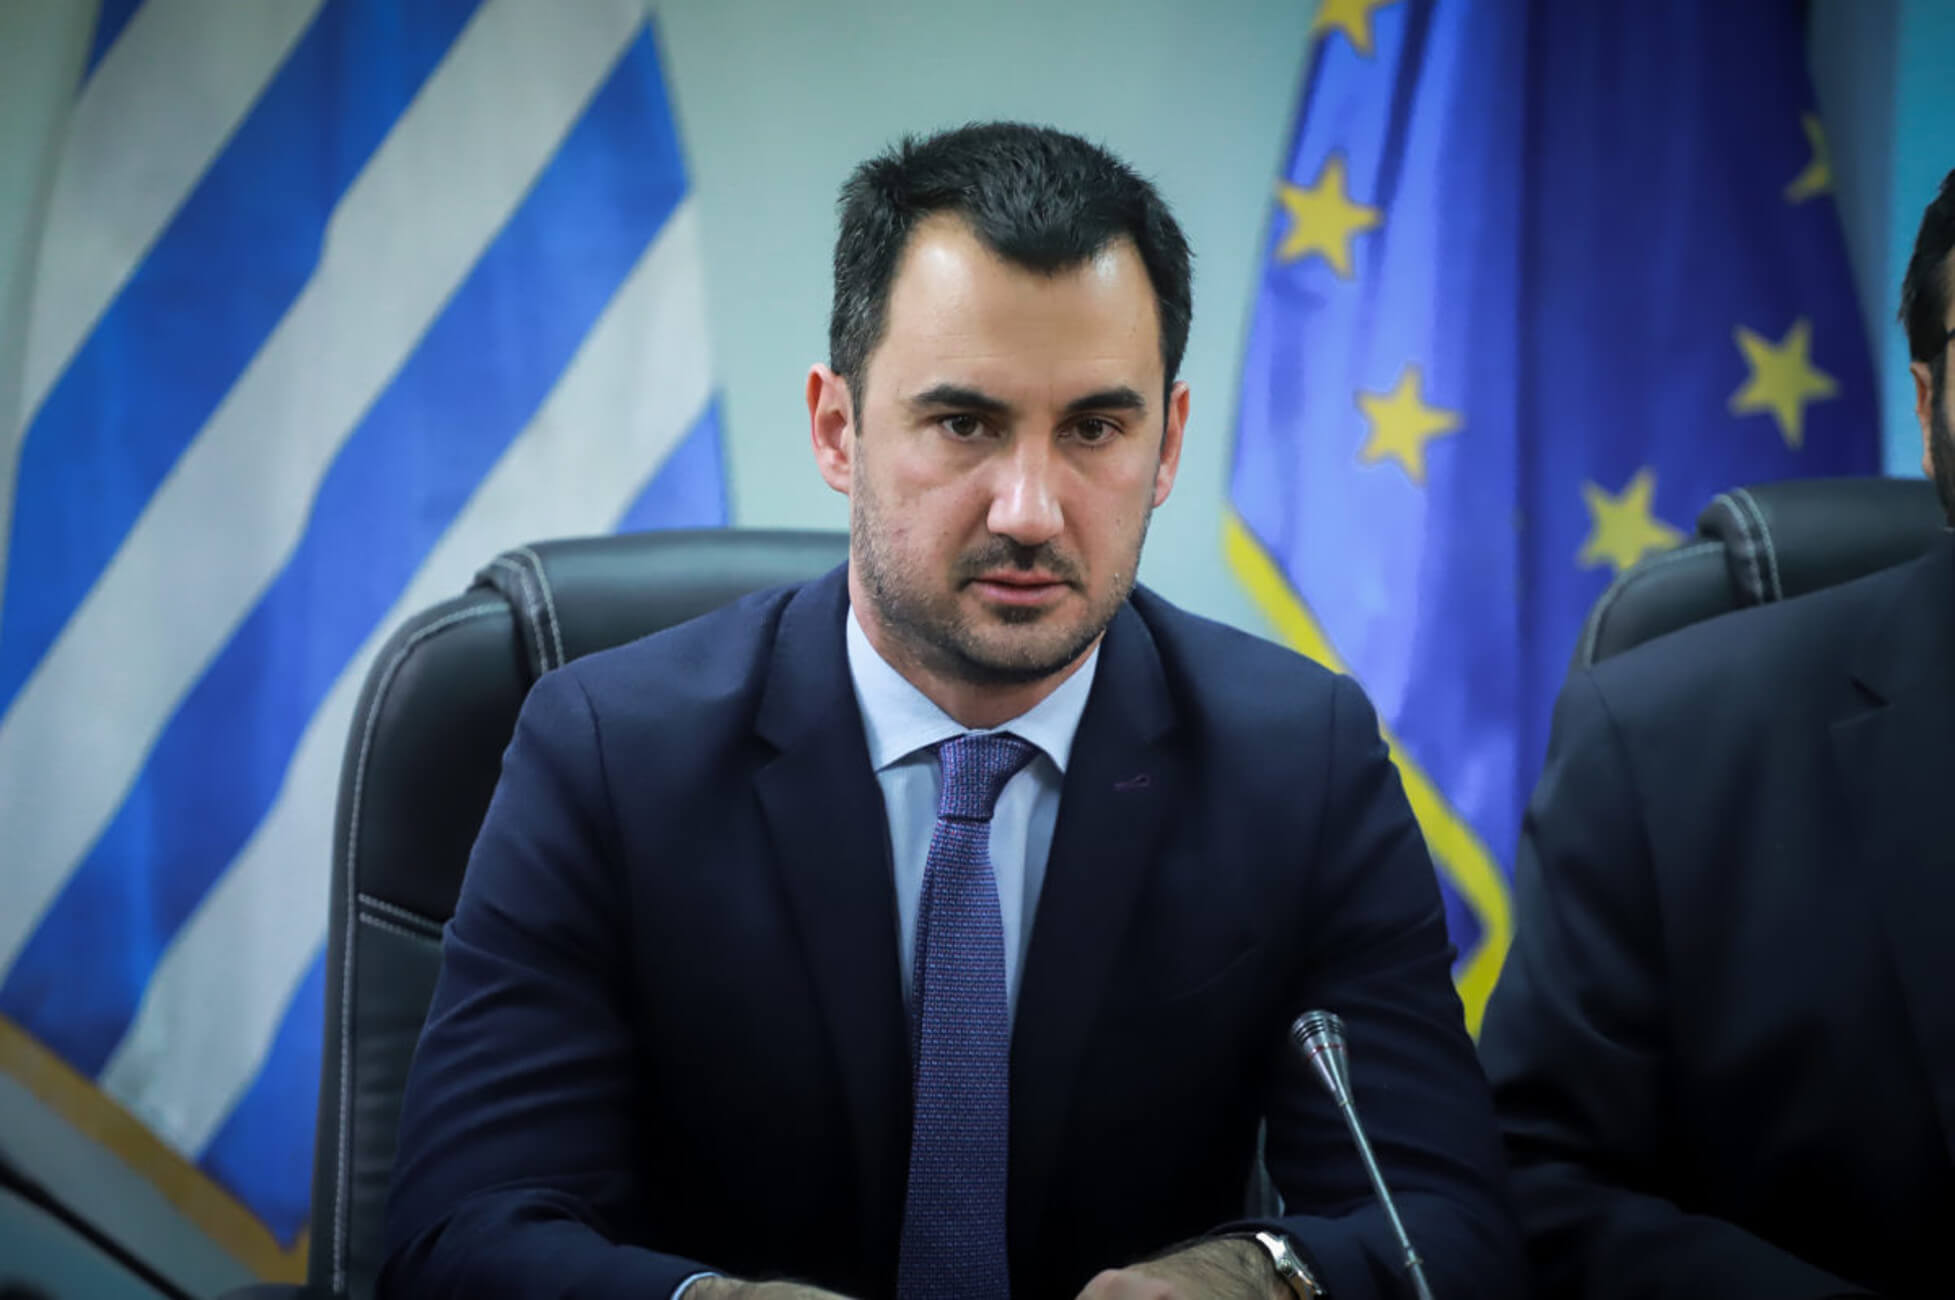 Α.Χαρίτσης: «Η Ελλάδα πρέπει να ζητήσει σύγκληση Έκτακτου Ευρωπαϊκού Συμβουλίου αν ισχύουν όσα λέει η Τουρκία»